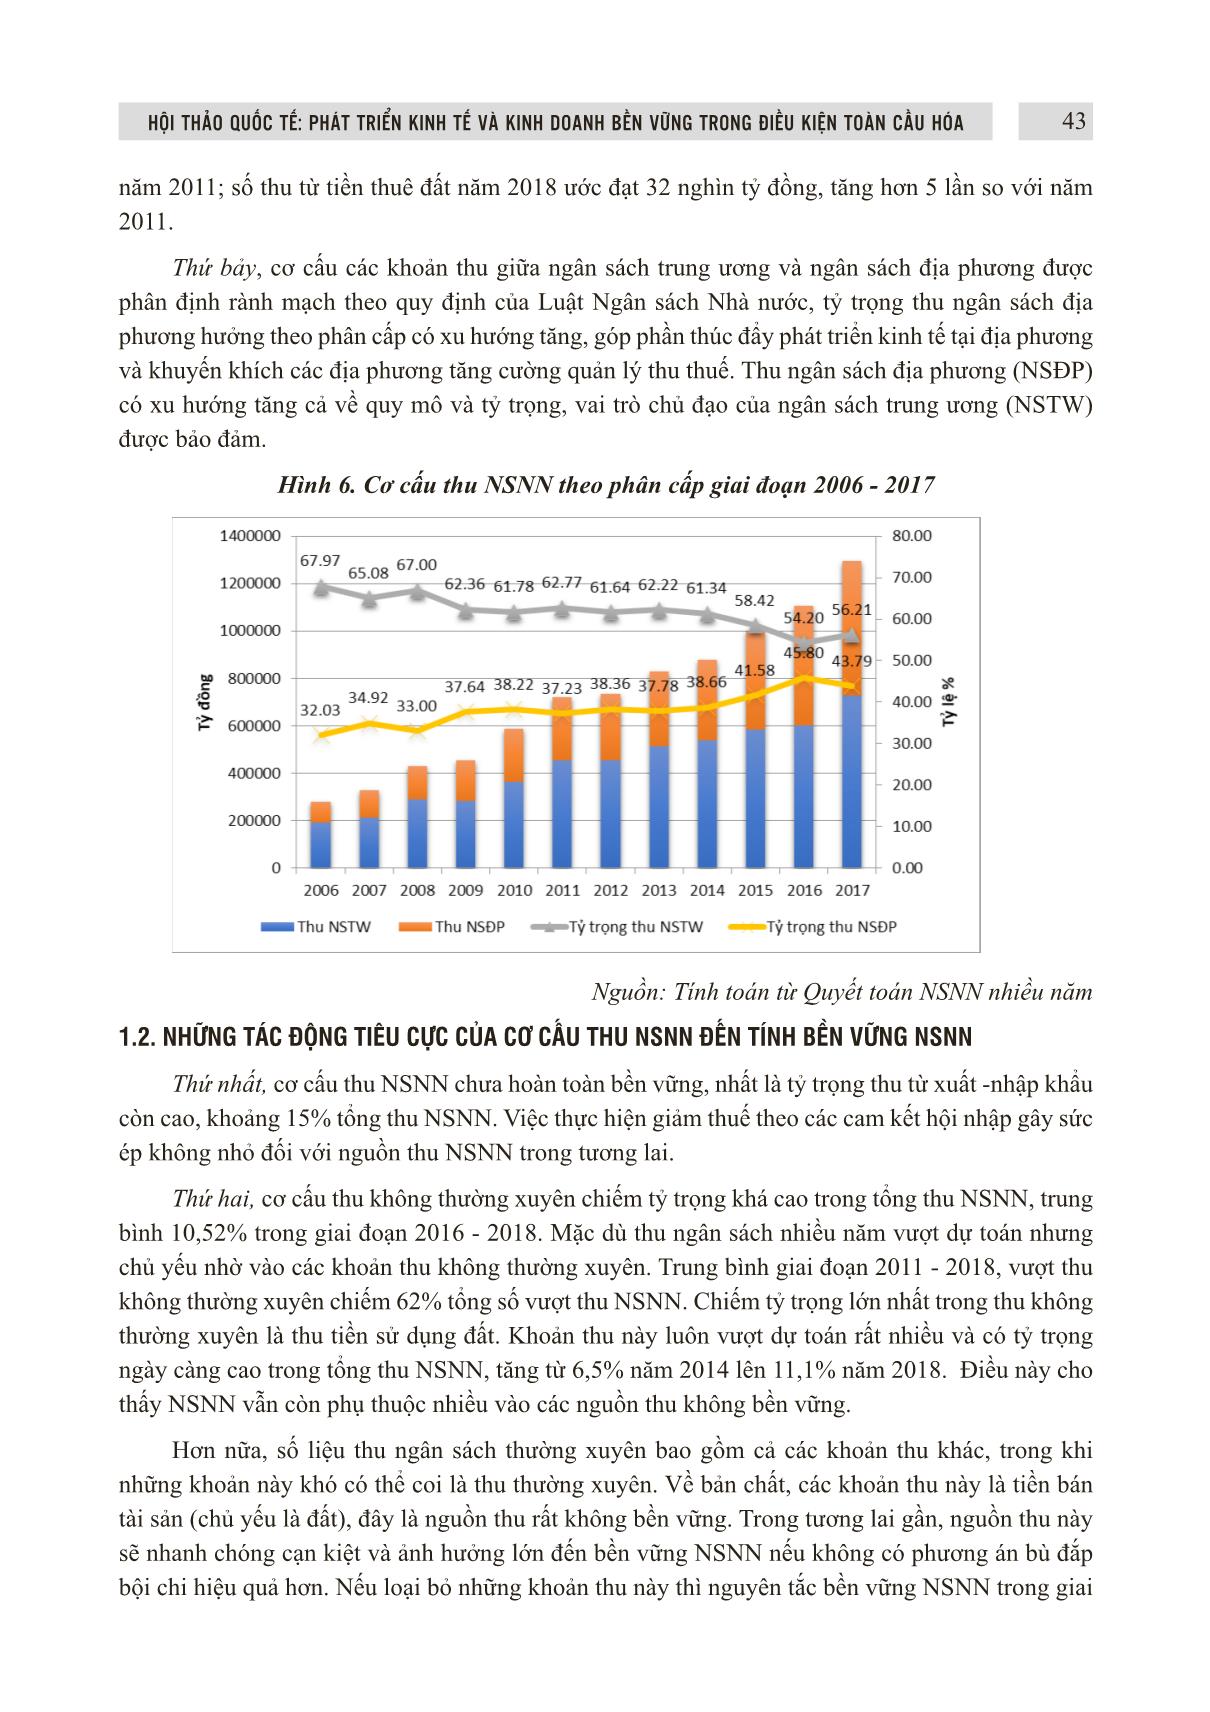 Đổi mới cơ cấu thu ngân sách nhà nước ở Việt Nam theo hướng bền vững trang 5